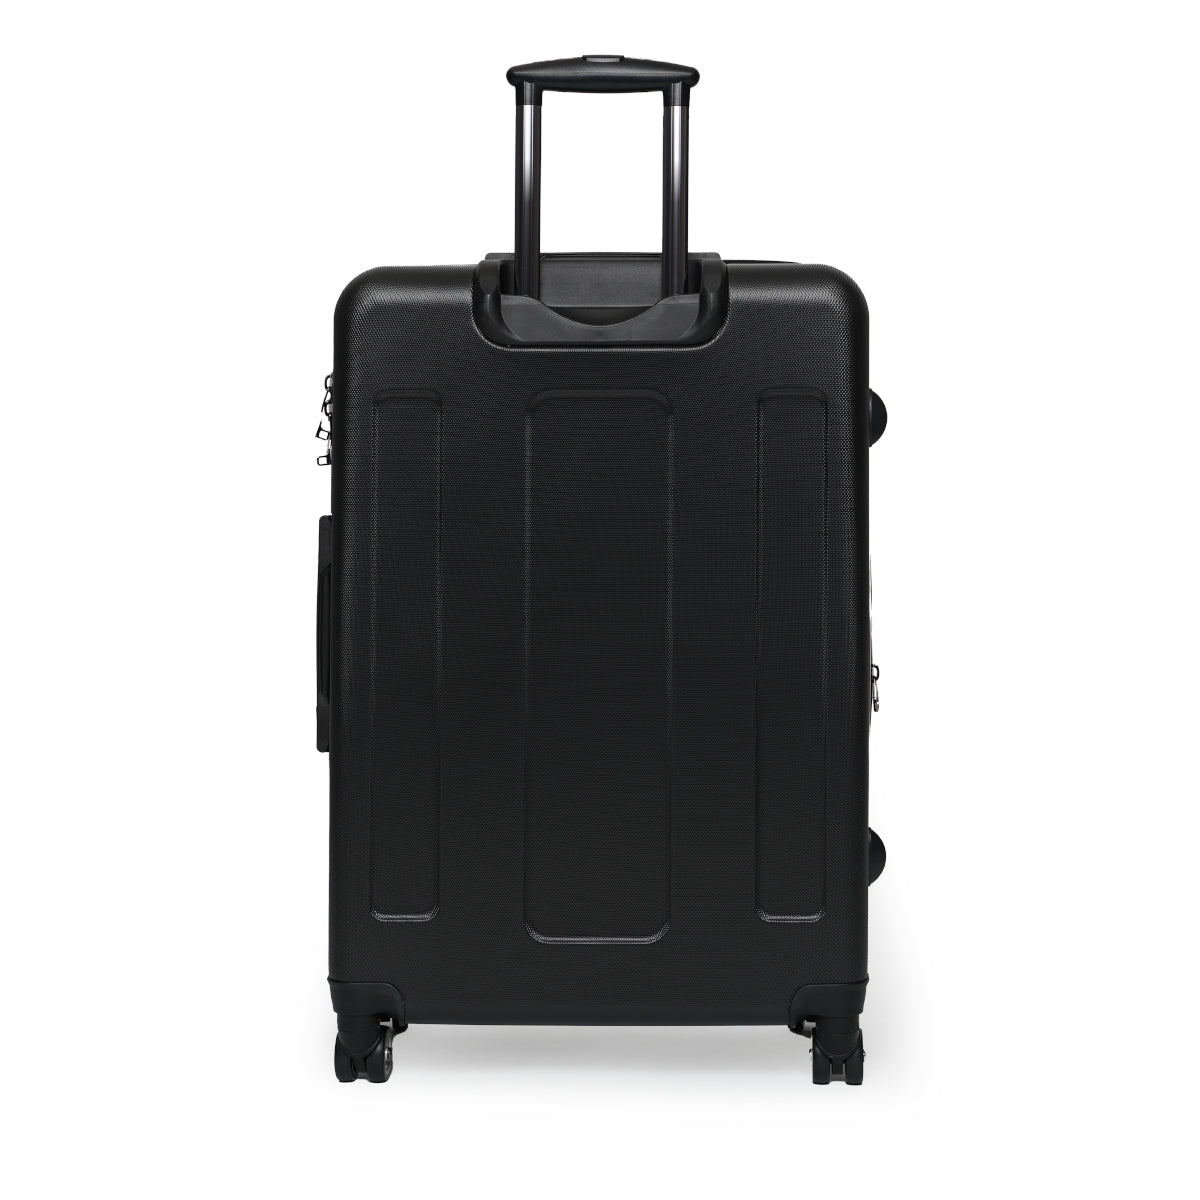 Suitcases - Blue Polls design